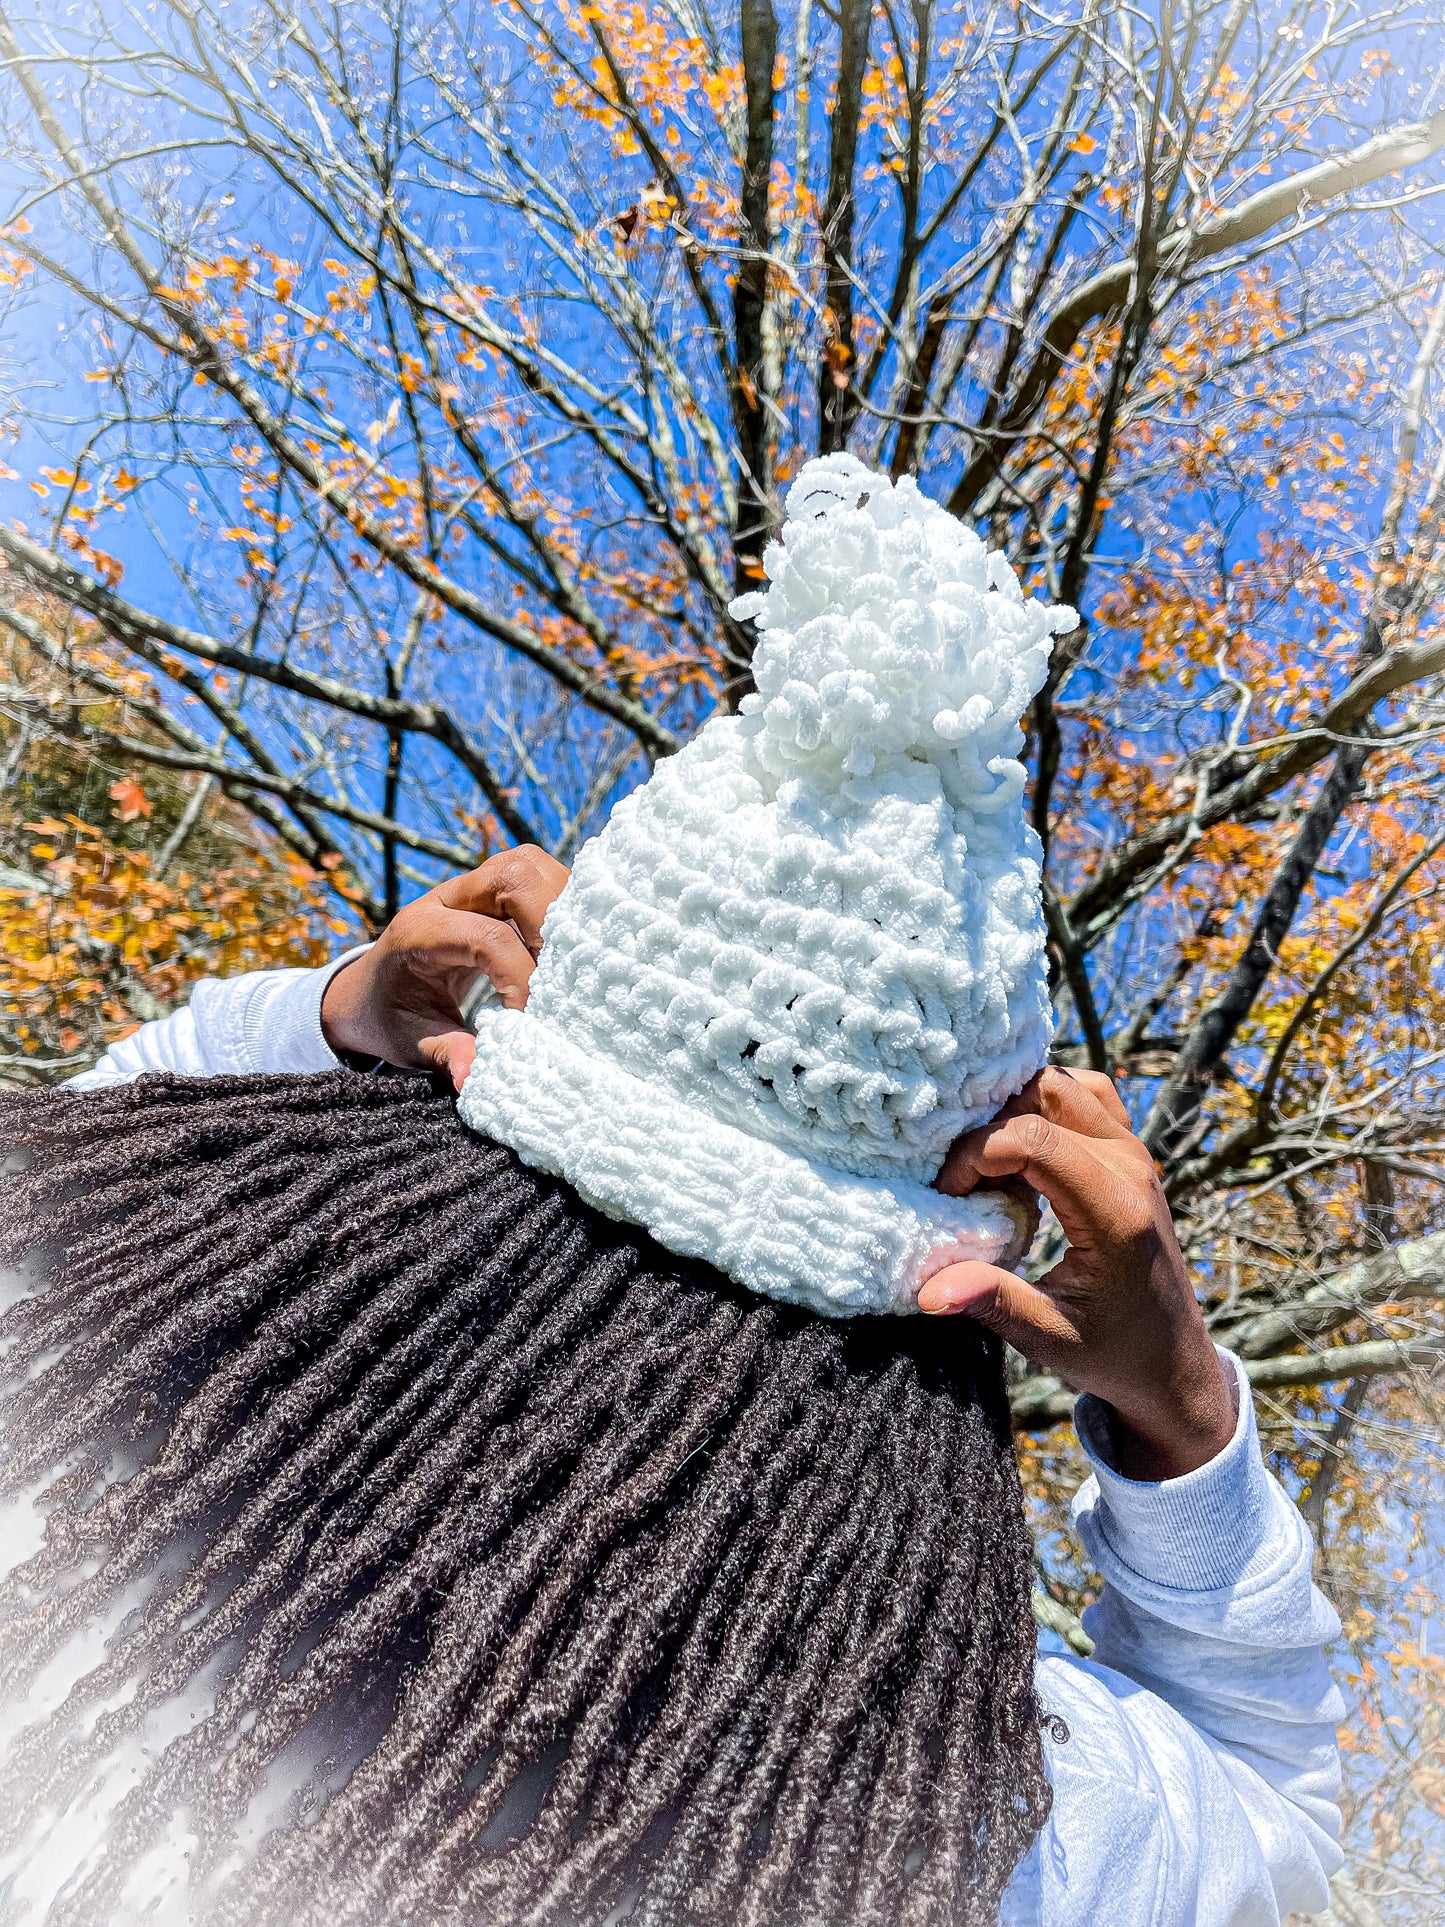 White Crochet Hat